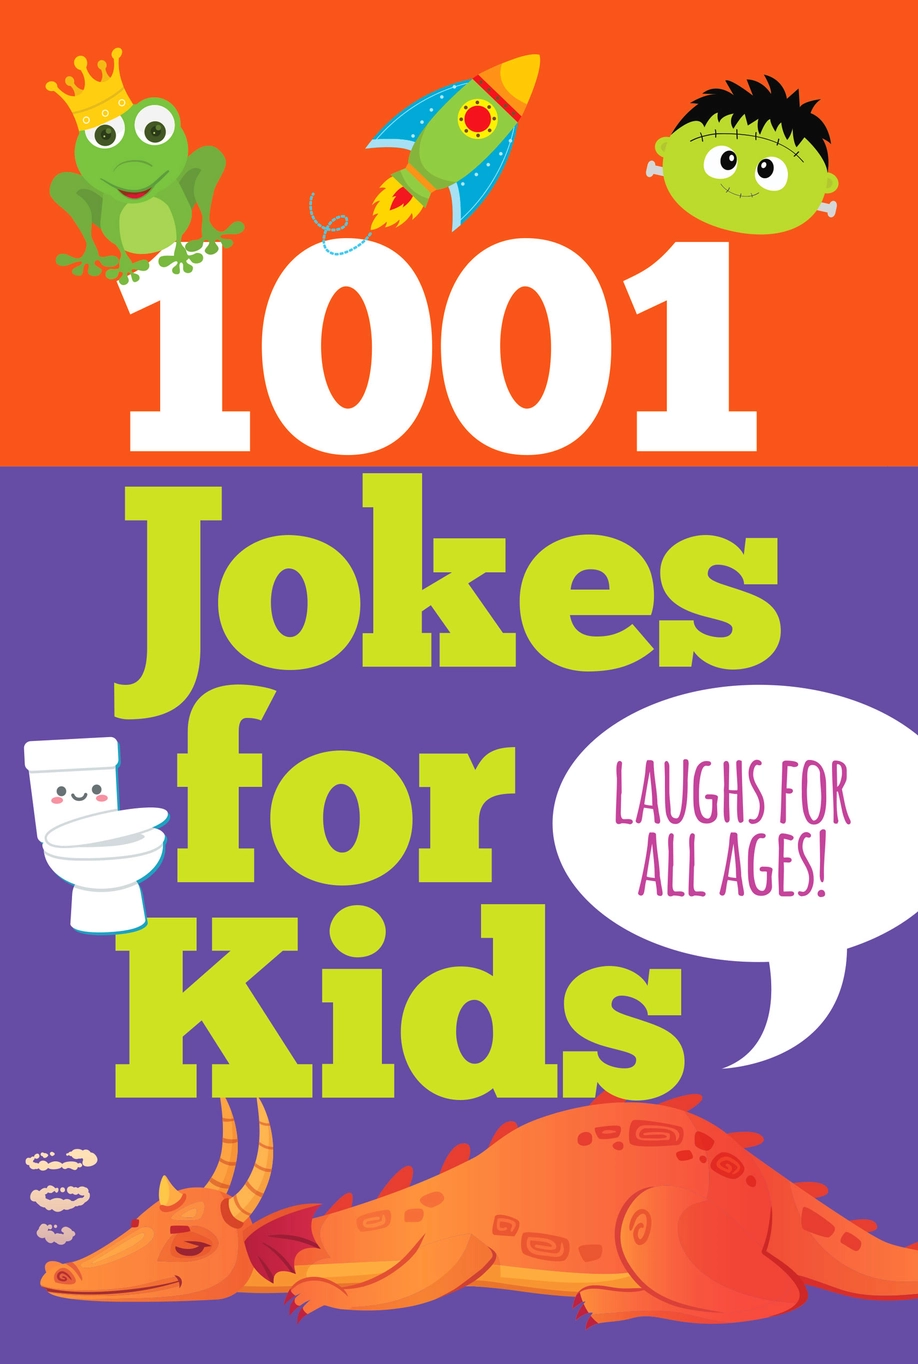 1001 Jokes for Kids - Heart of the Home LV